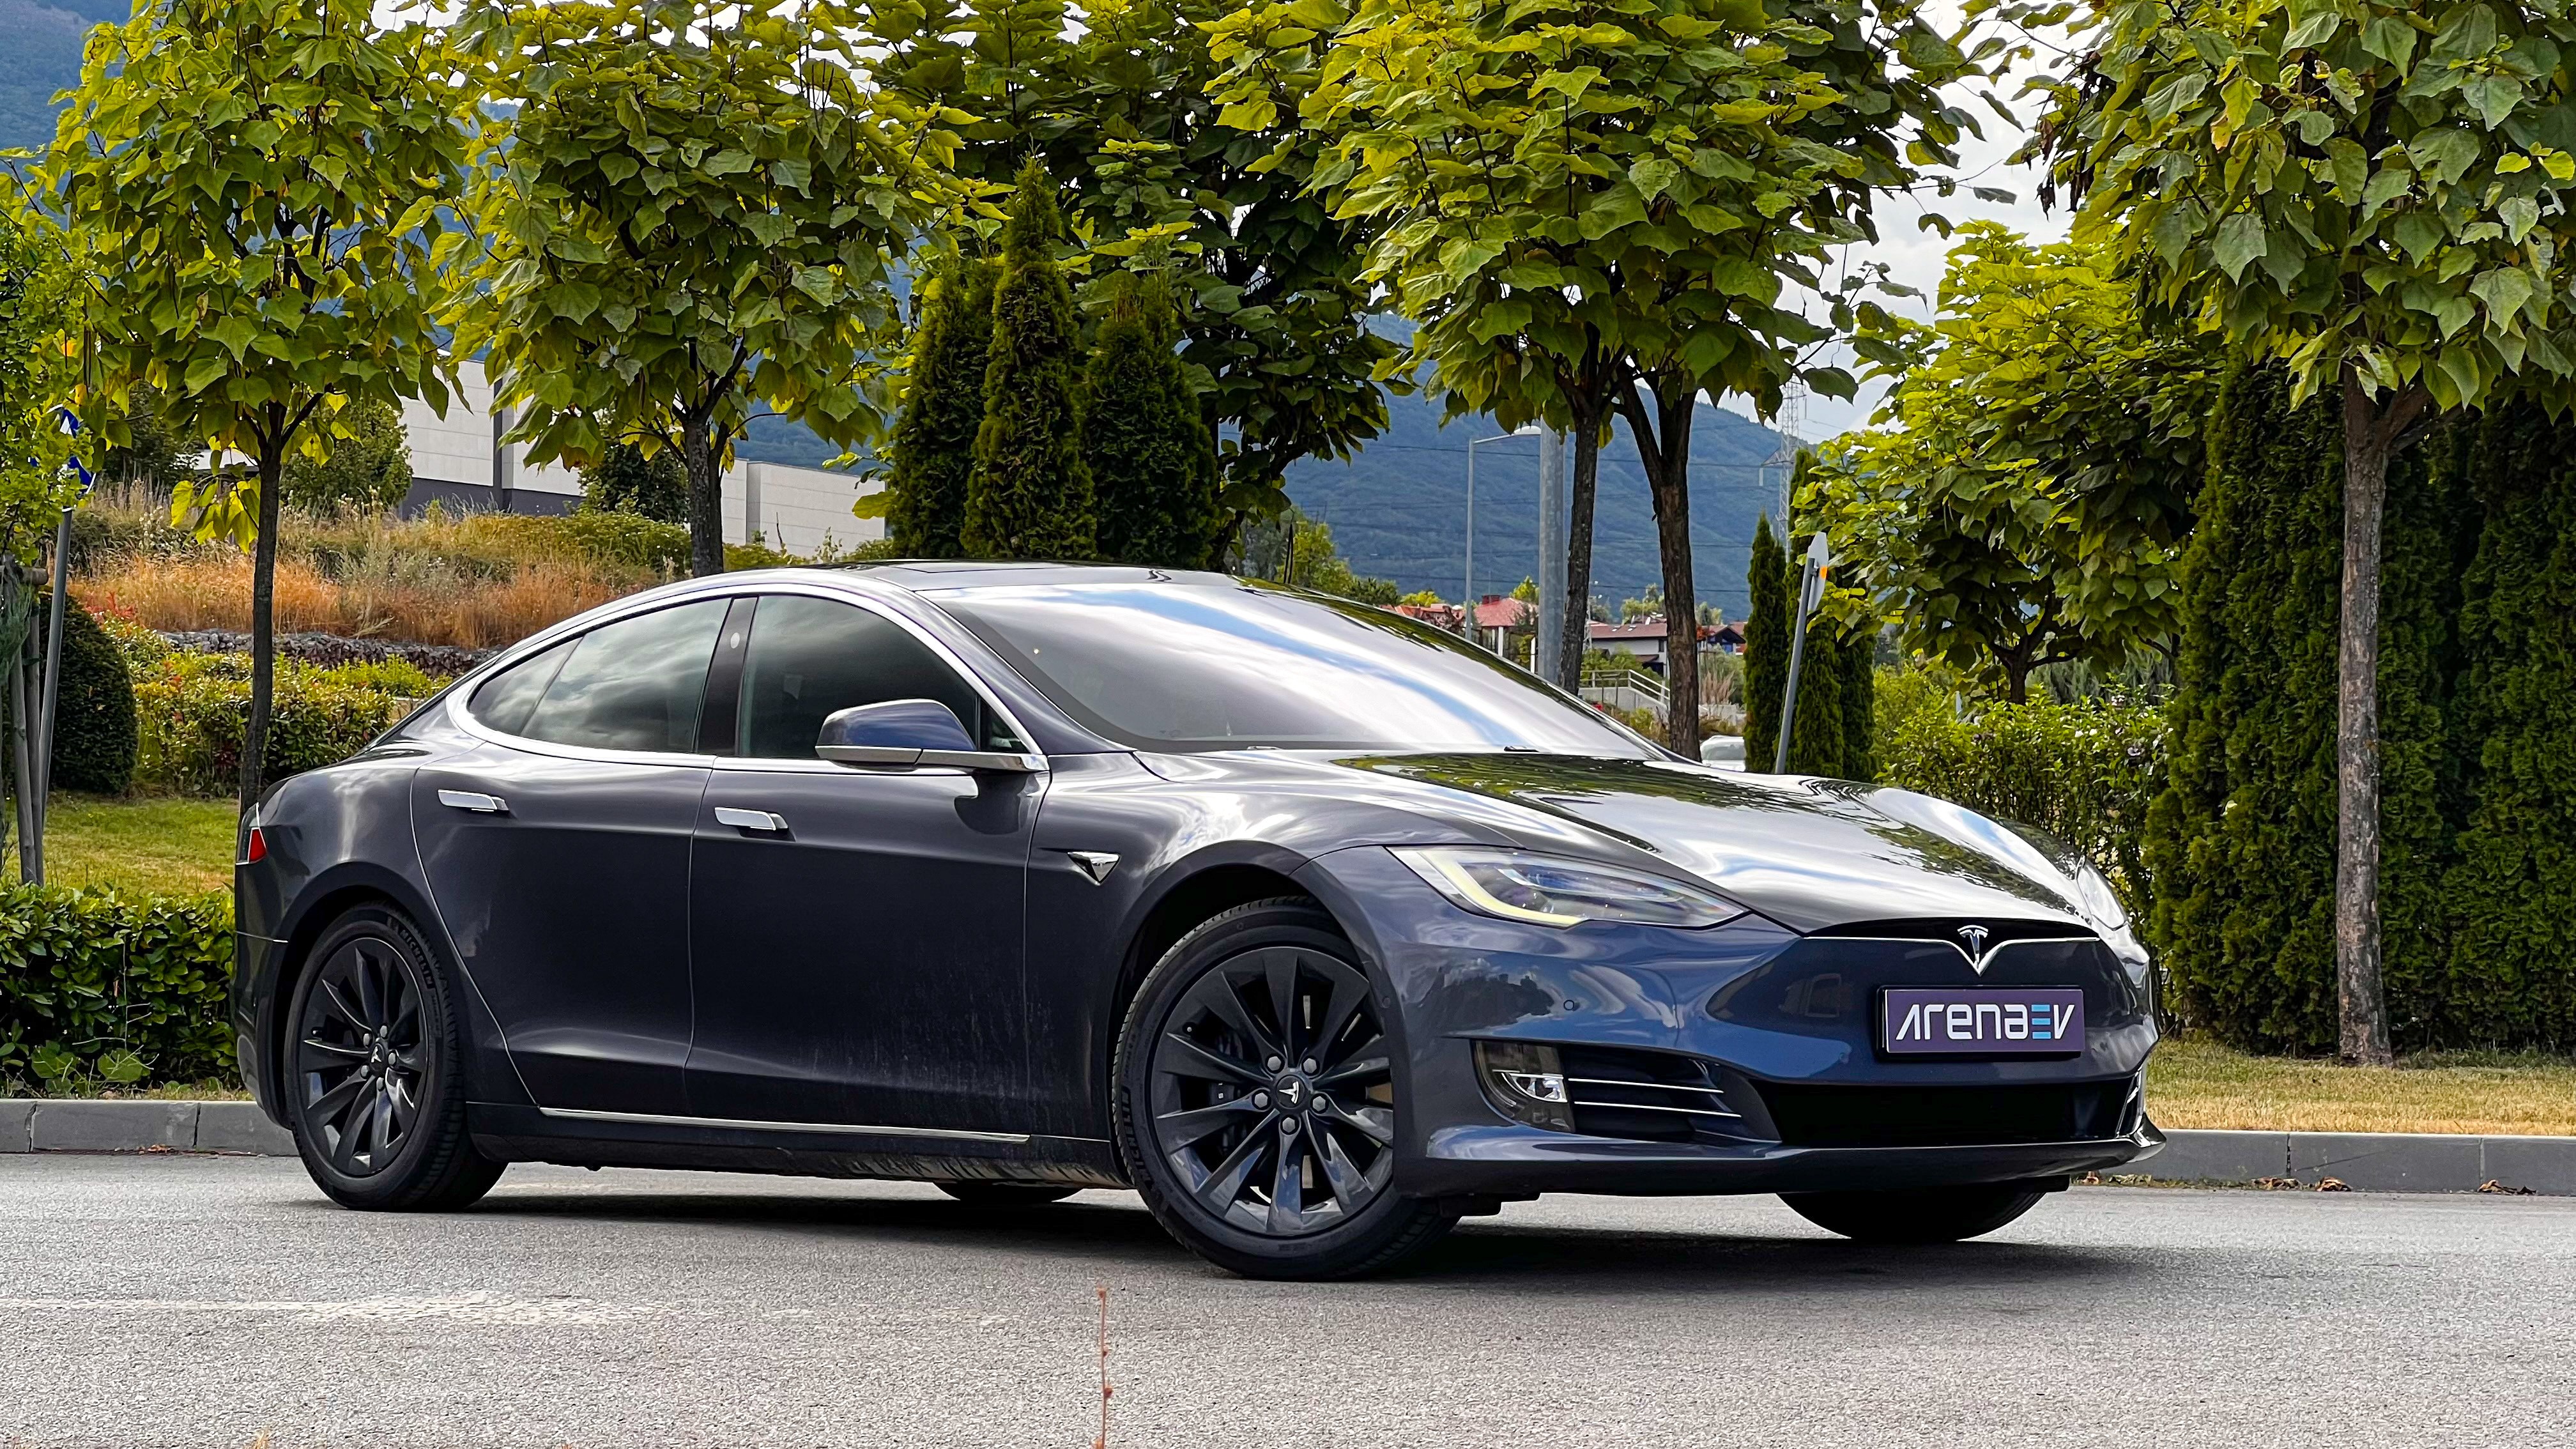 2018 Tesla Model S 75D 実世界範囲テスト